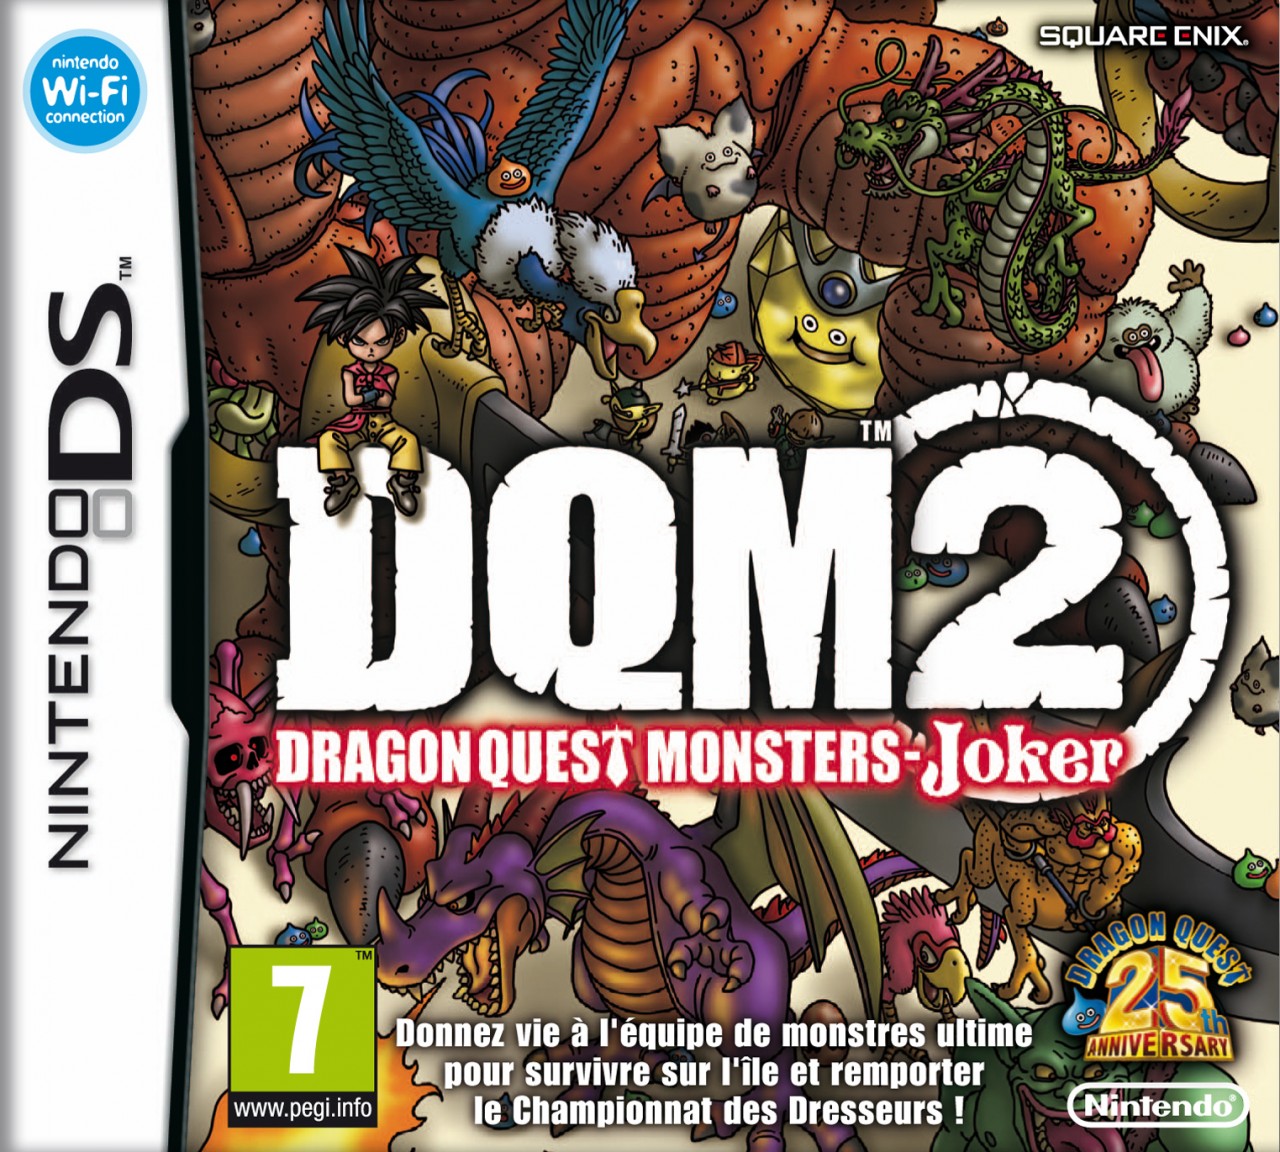 Dragon quest monsters joker 2 monster list